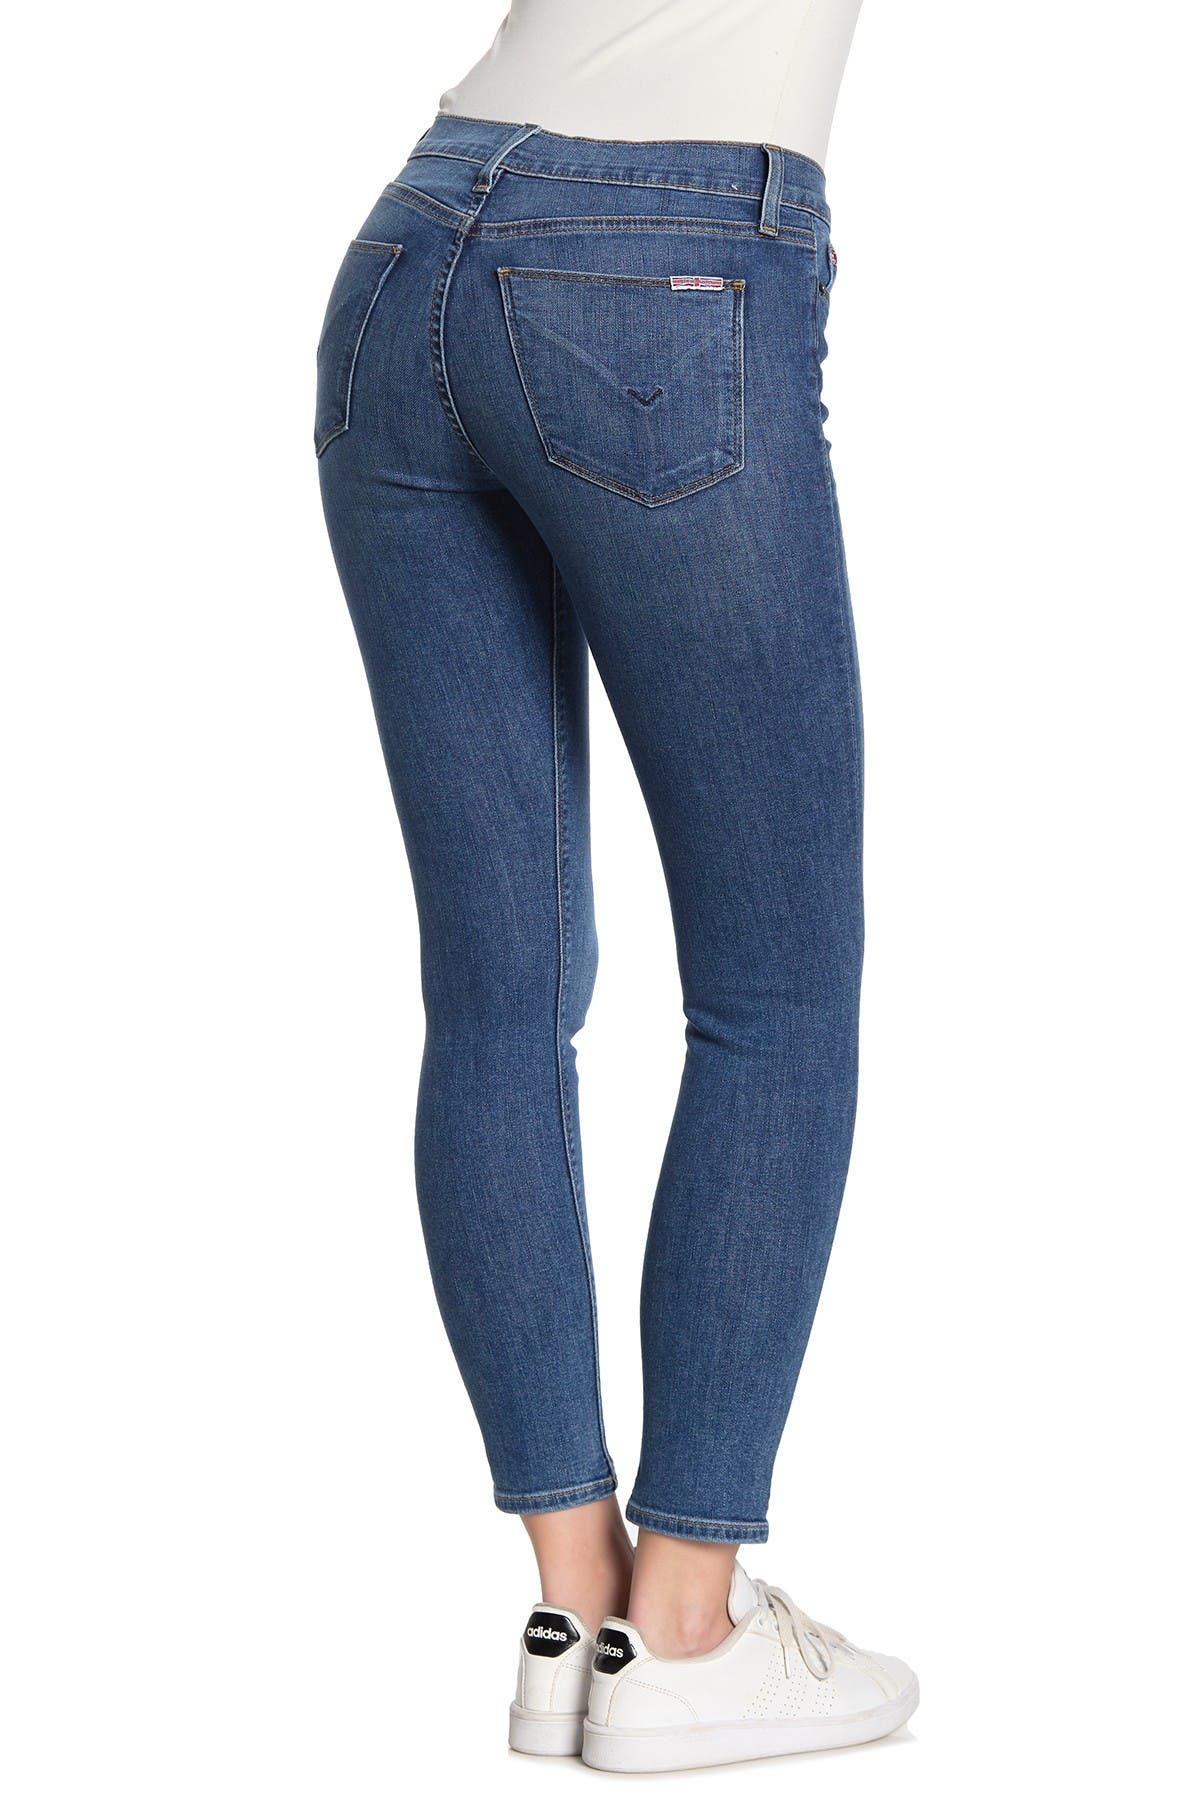 hudson natalie super skinny jeans